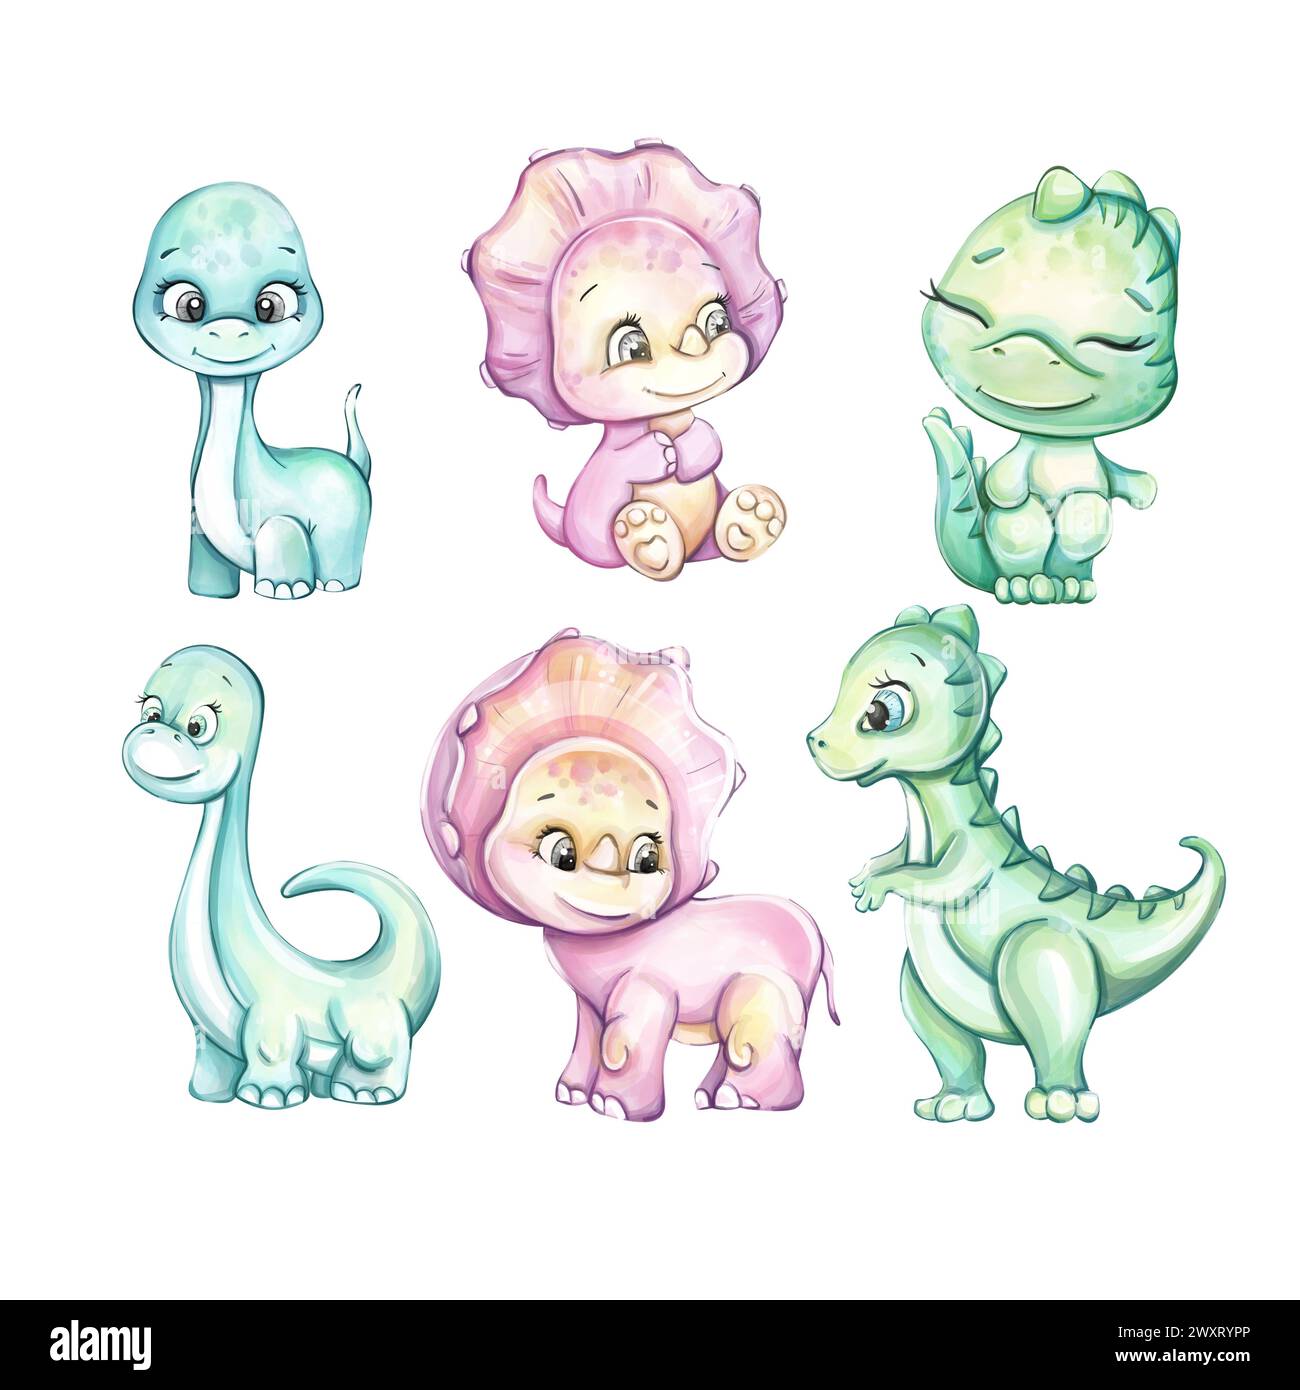 Aquarelle bébé mignon dinosaure Dino famille. Dessin animé pour la pépinière, babyshower, décor, autocollants, imprimés textiles avec des animaux historiques Banque D'Images